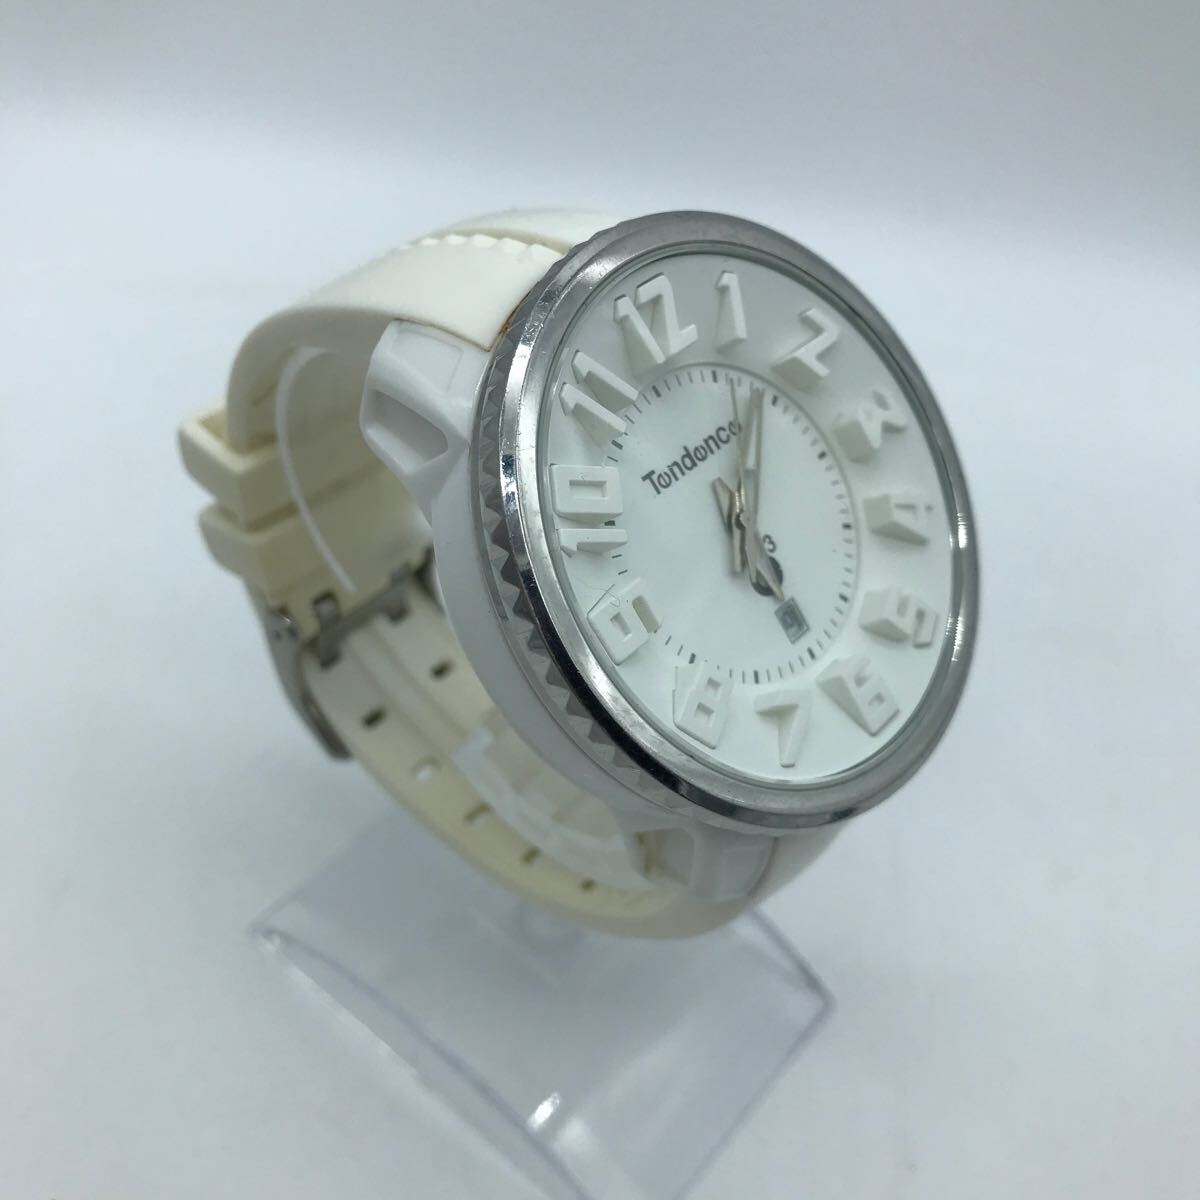 TENDENCE/ Tendence 02033013AA резиновая лента наручные часы белый циферблат рабочий товар 